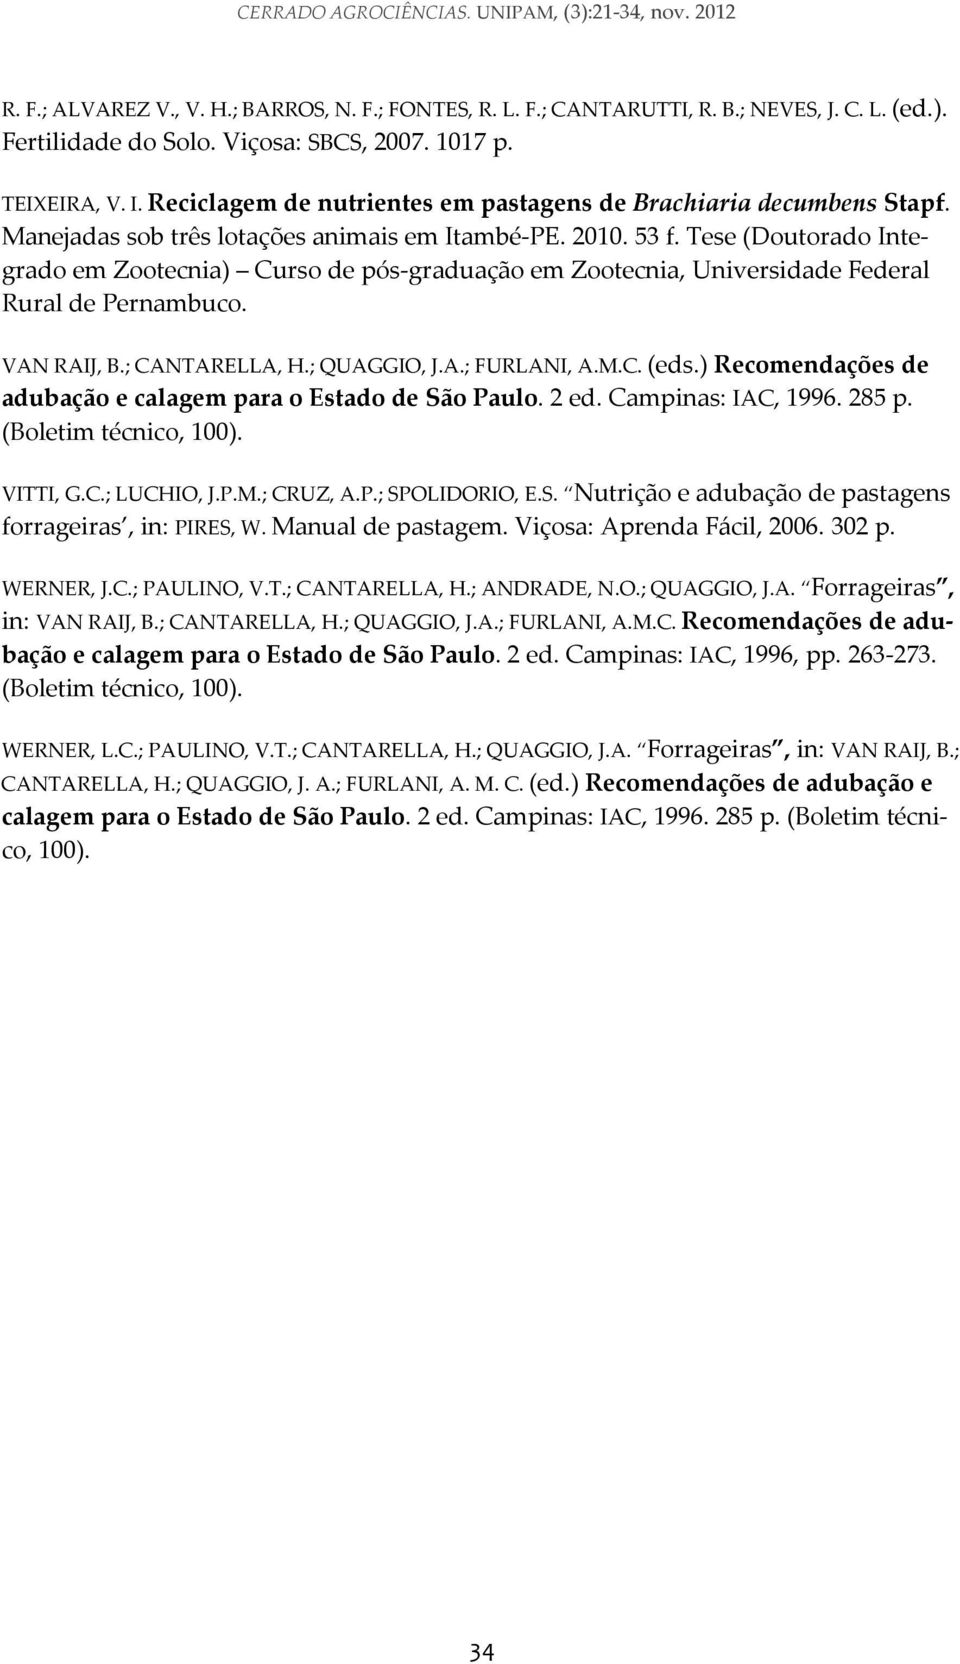 Tese (Doutorado Integrado em Zootecnia) Curso de pós graduação em Zootecnia, Universidade Federal Rural de Pernambuco. VAN RAIJ, B.; CANTARELLA, H.; QUAGGIO, J.A.; FURLANI, A.M.C. (eds.